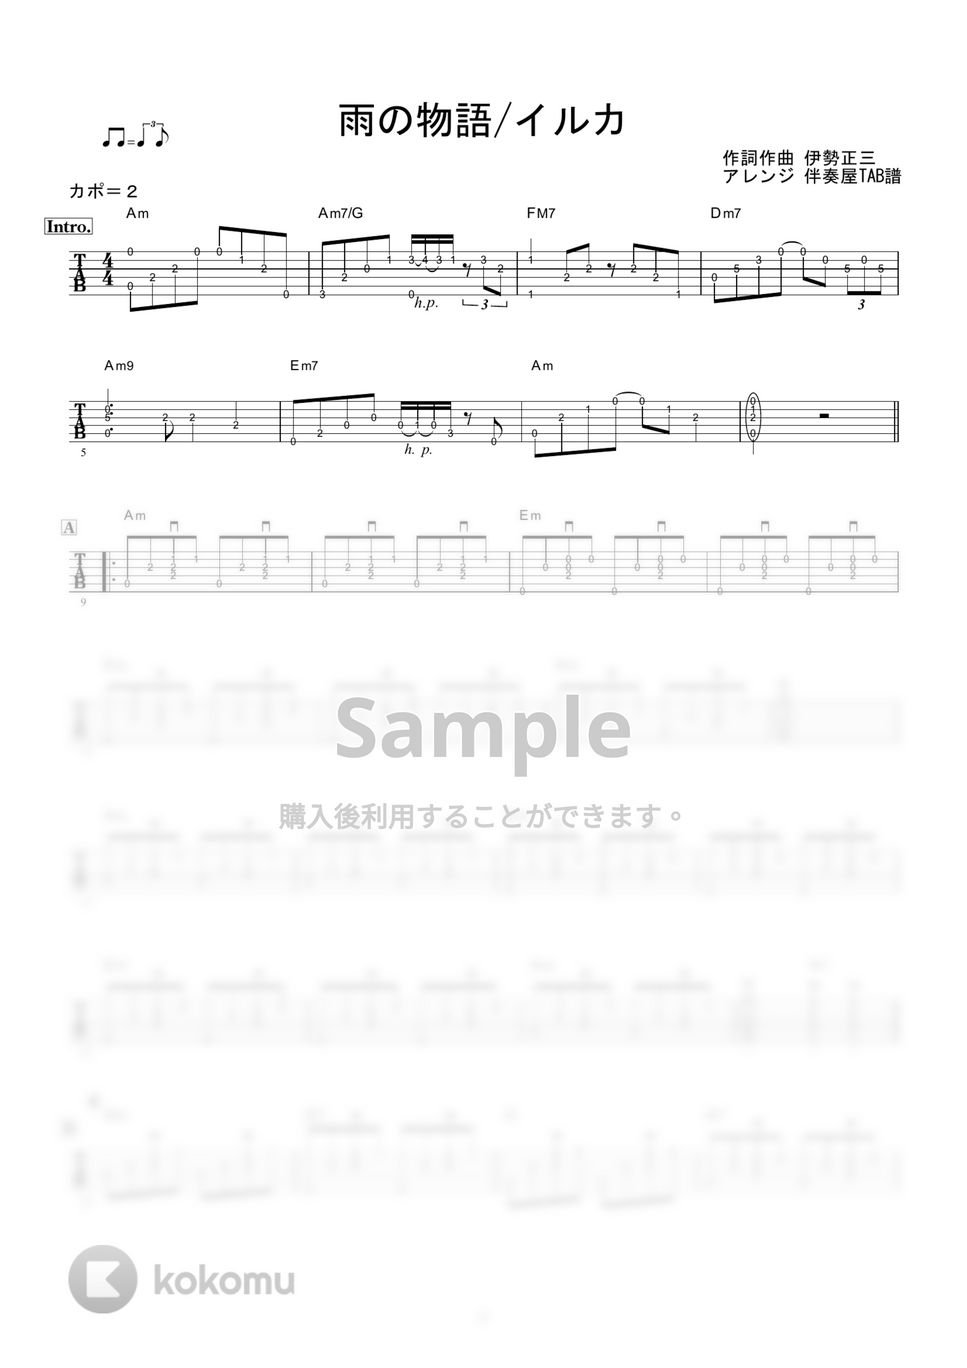 イルカ - 雨の物語 (ギター伴奏/イントロ・間奏ソロギター) by 伴奏屋TAB譜